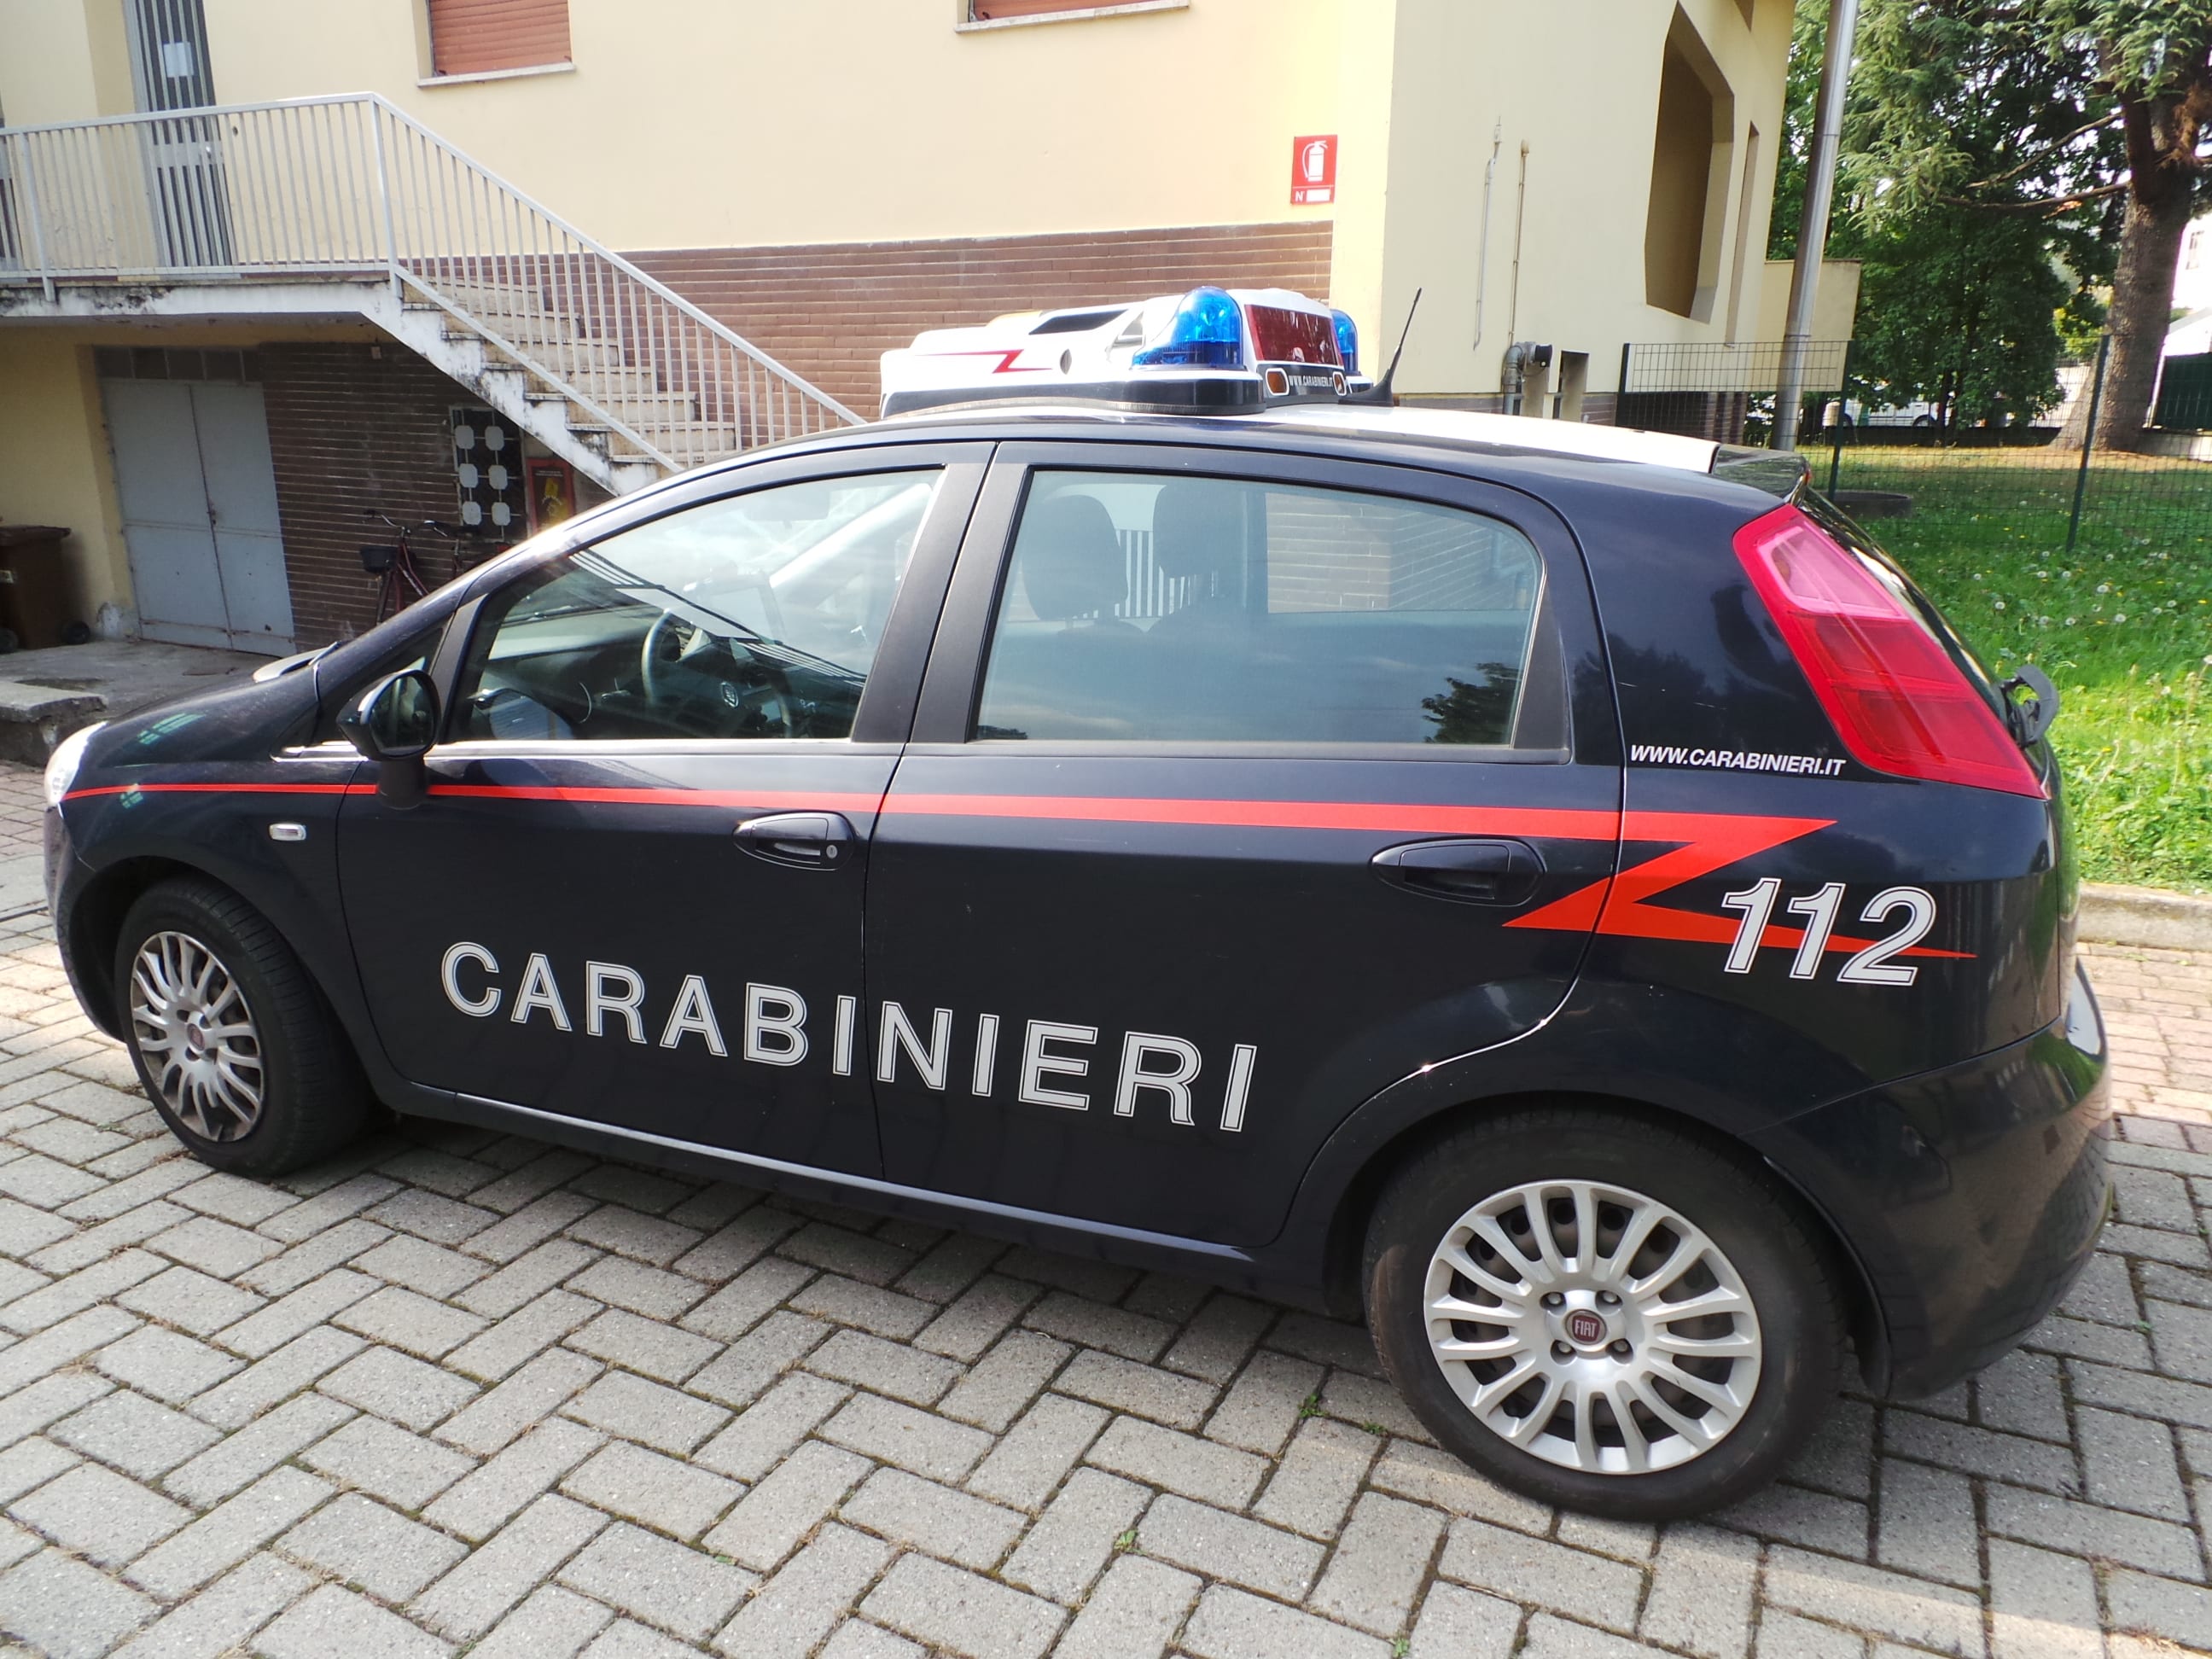 Trova l’auto vandalizzata: brutta sorpresa per un automobilista di Gerenzano